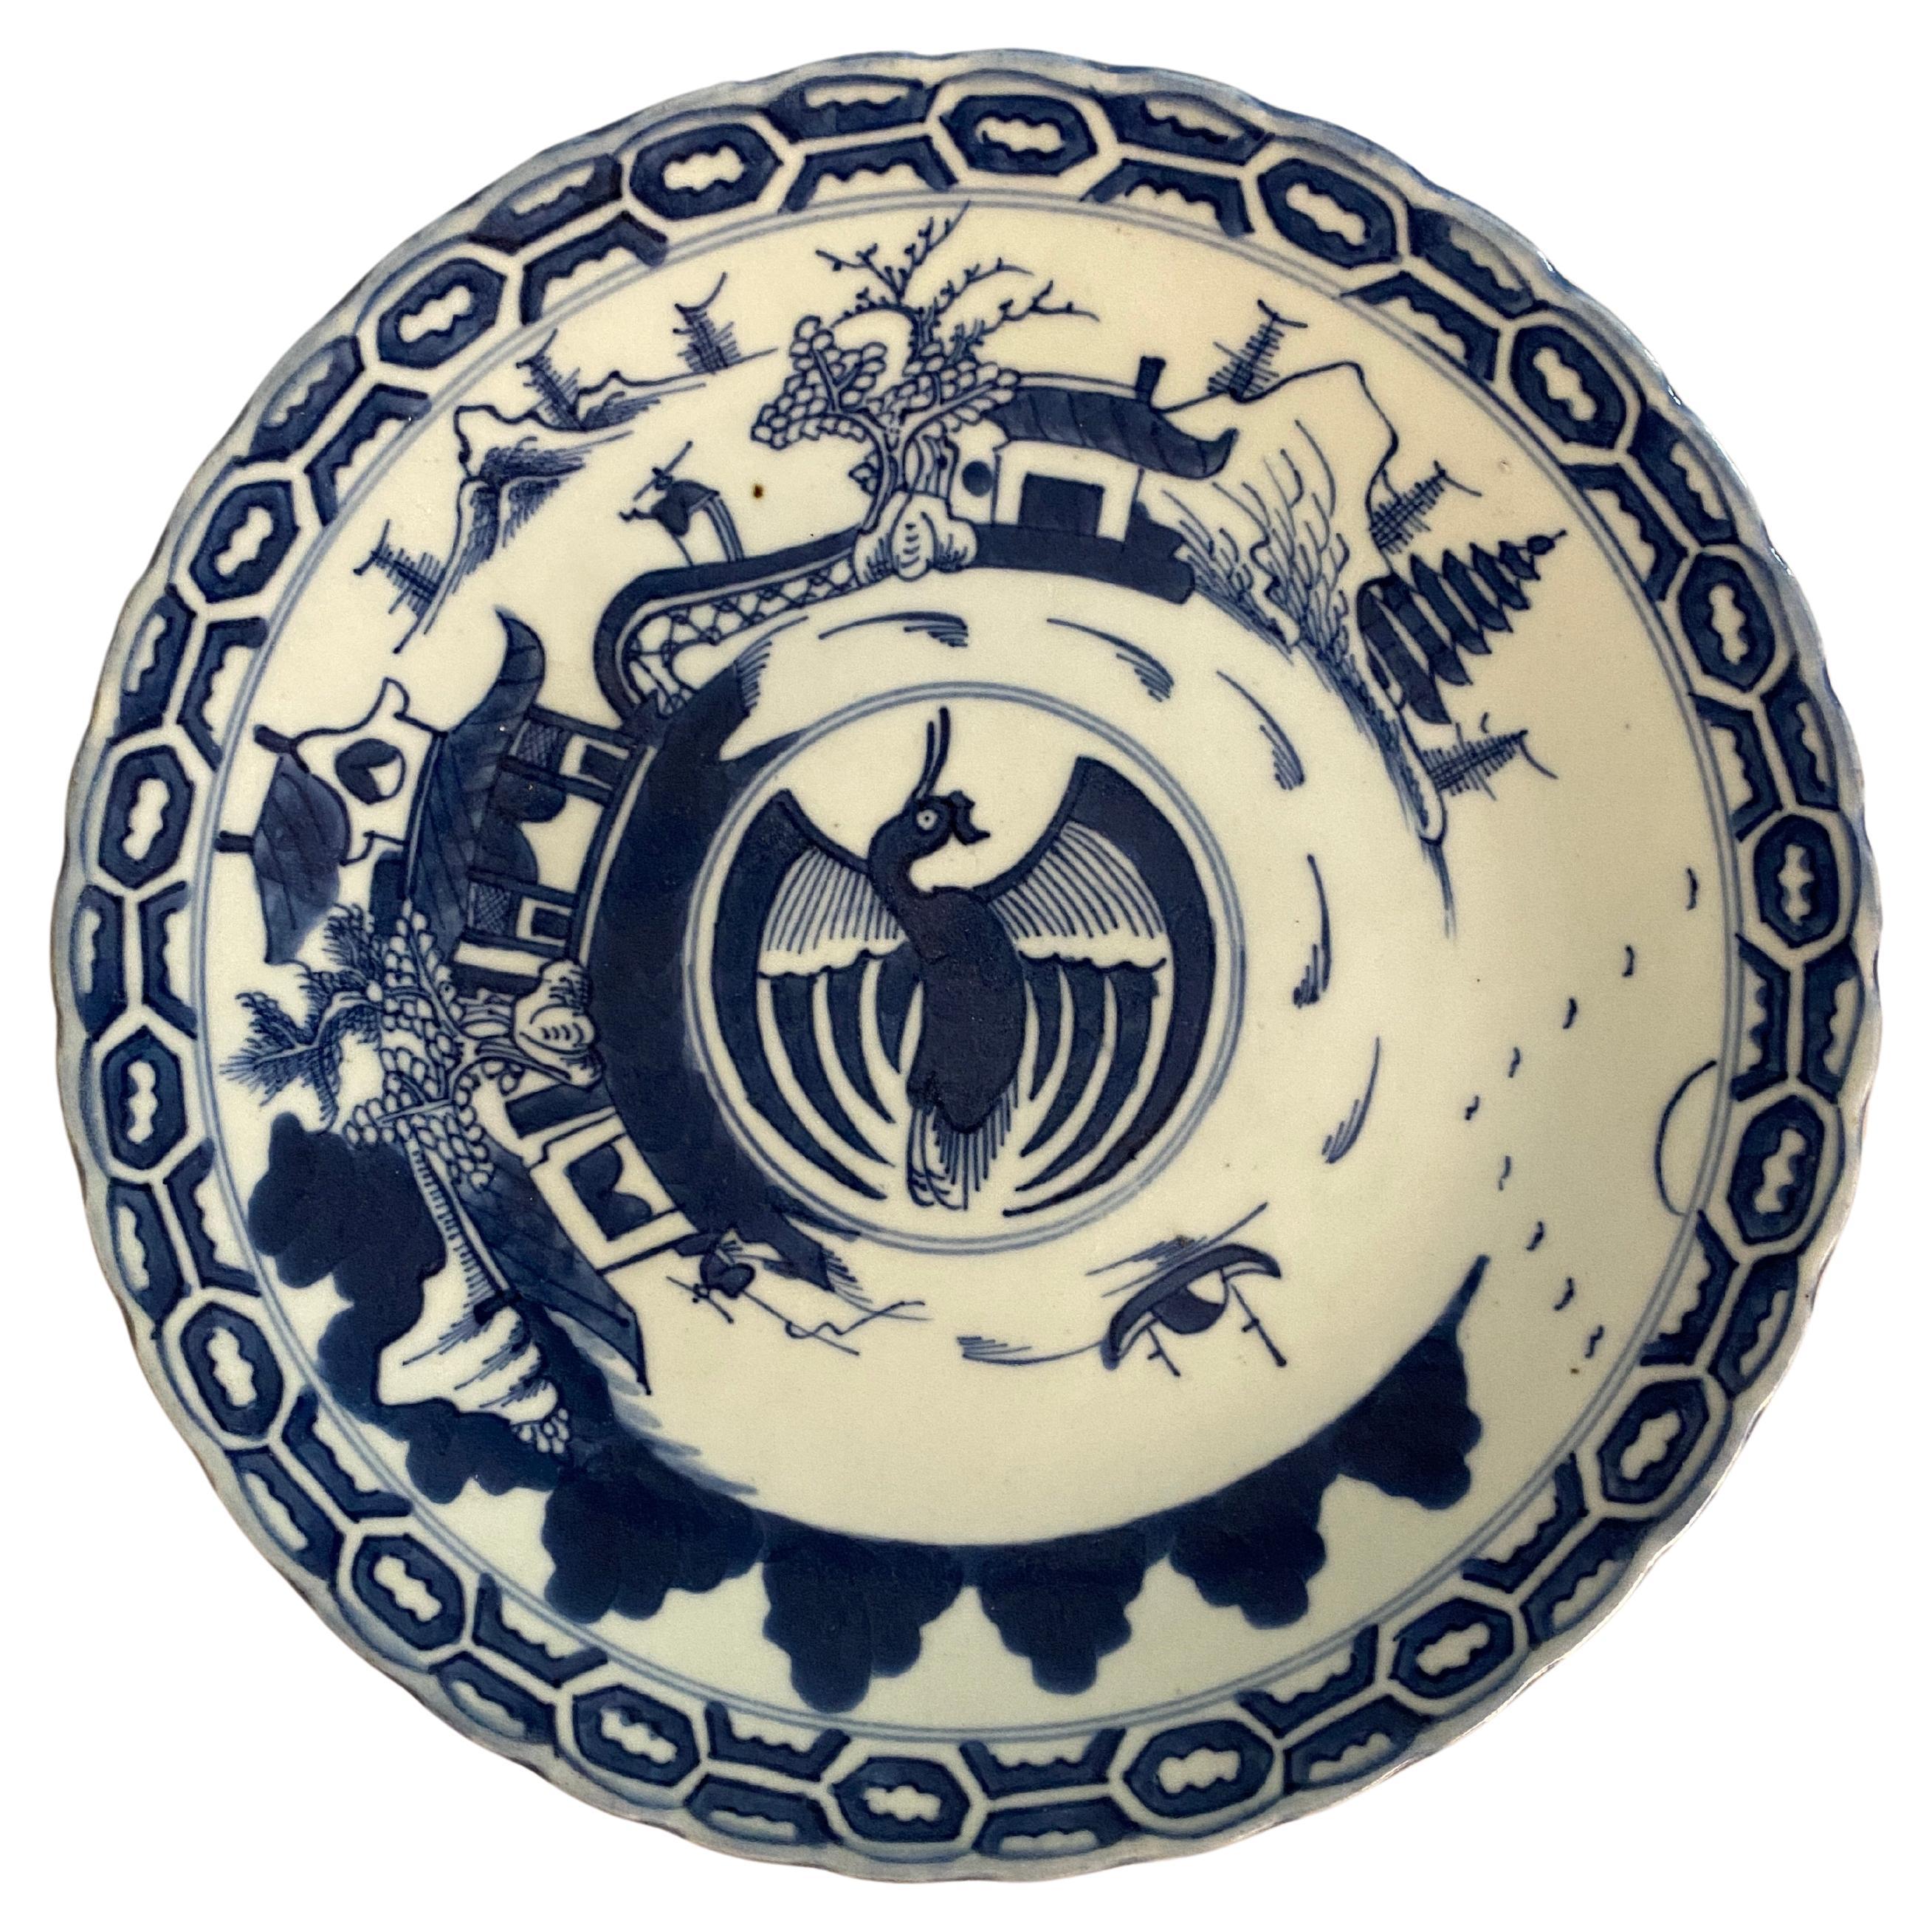 Großer weißer und blauer Porzellanteller aus China des 19. Jahrhunderts